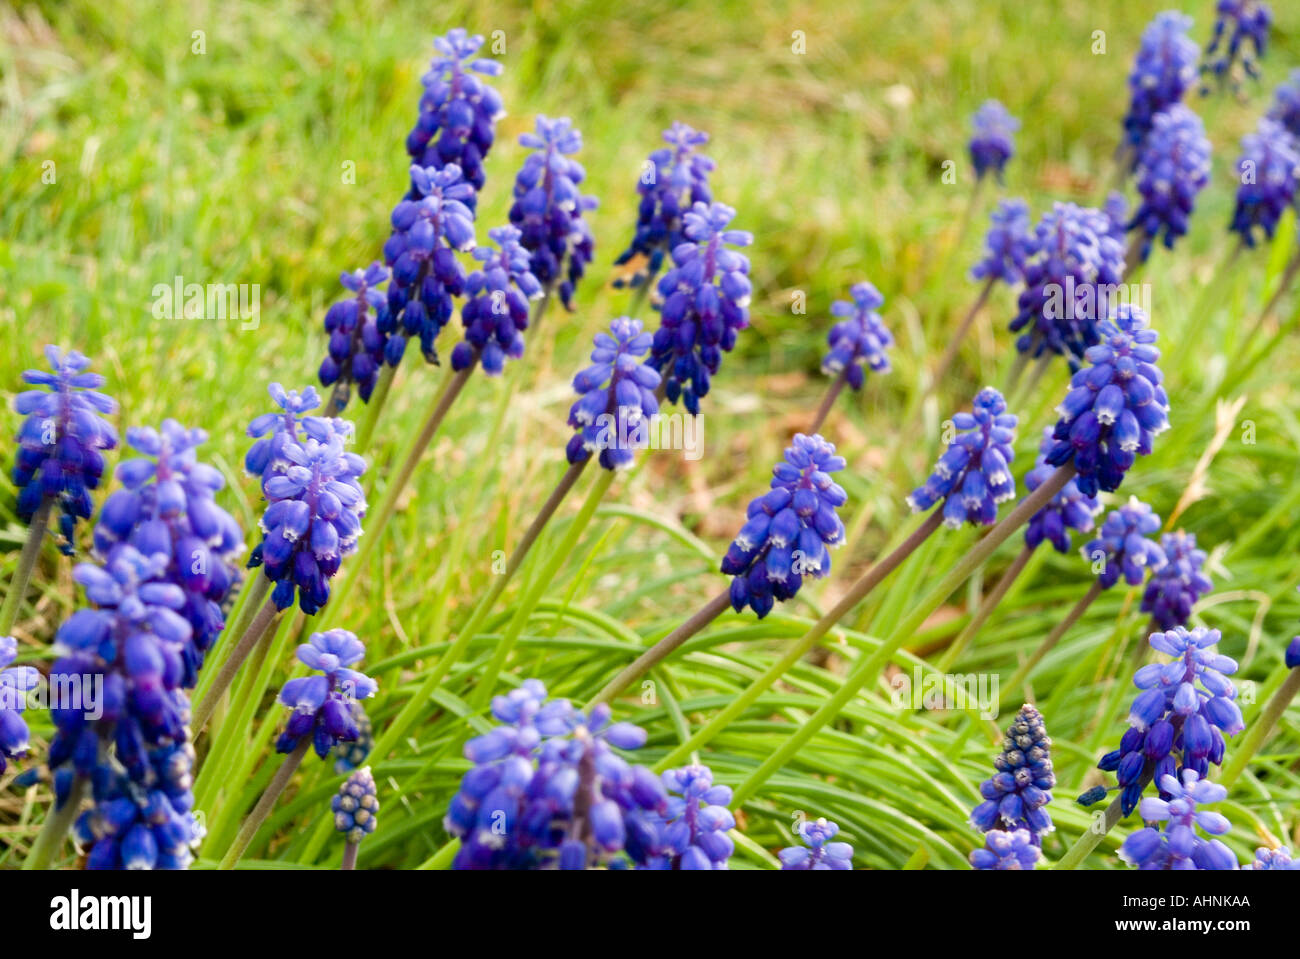 TÌNH YÊU CÂY CỎ ĐV 5 - Page 86 Grape-hyacinth-in-flower-muscari-racemosum-AHNKAA